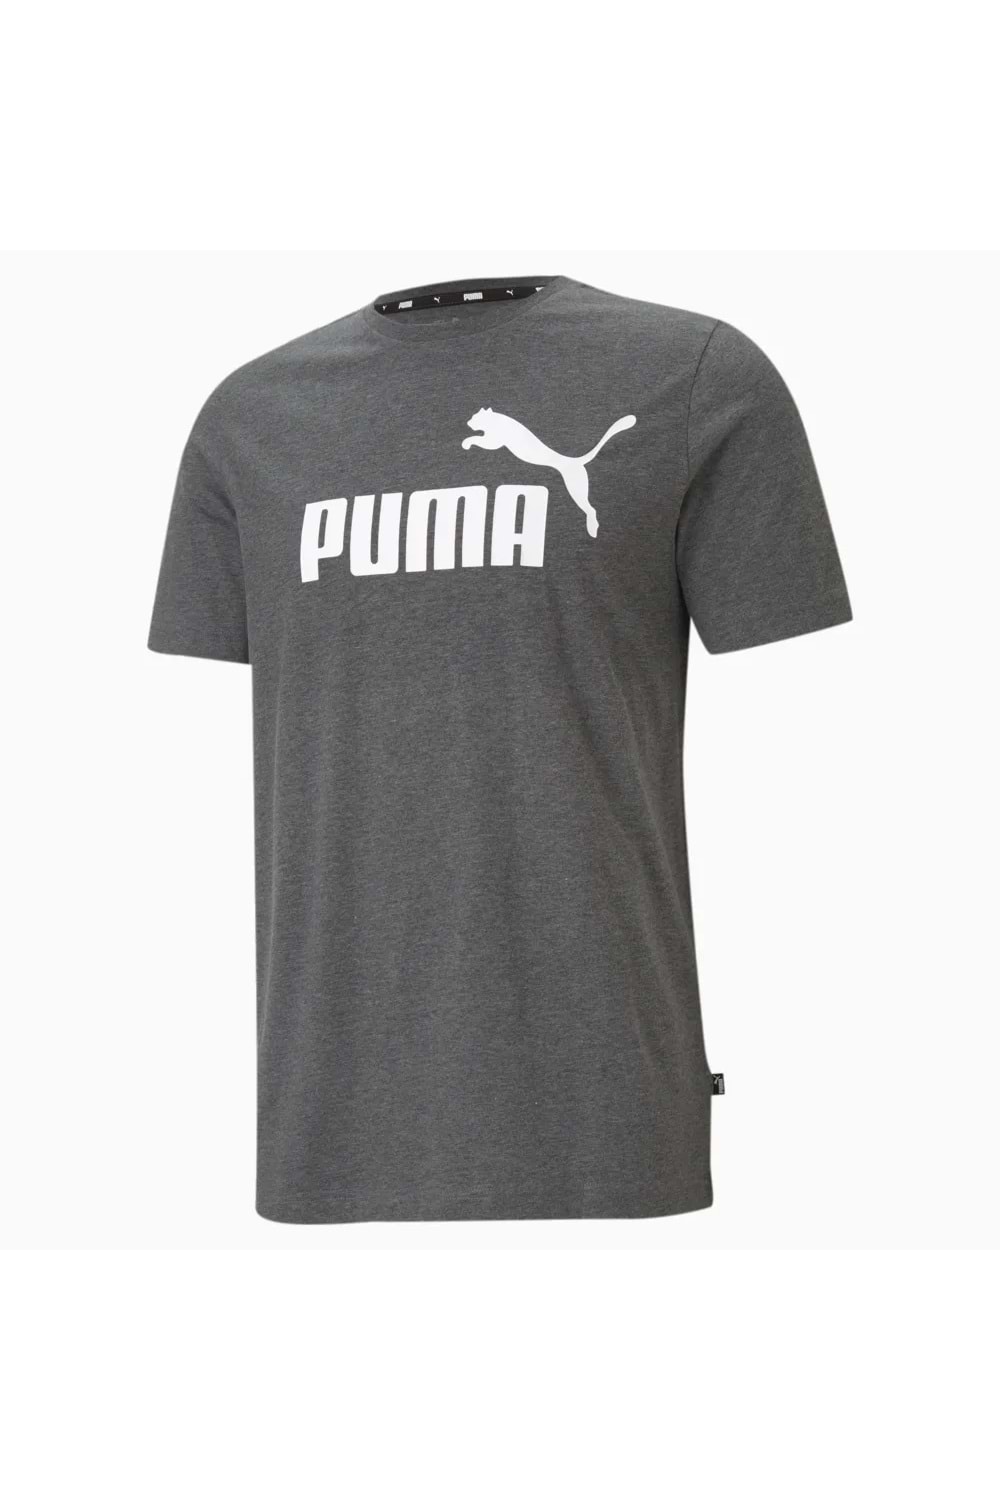 Puma ESS Heather Tee Erkek Siyah Kısa Kollu Tshirt 58673601